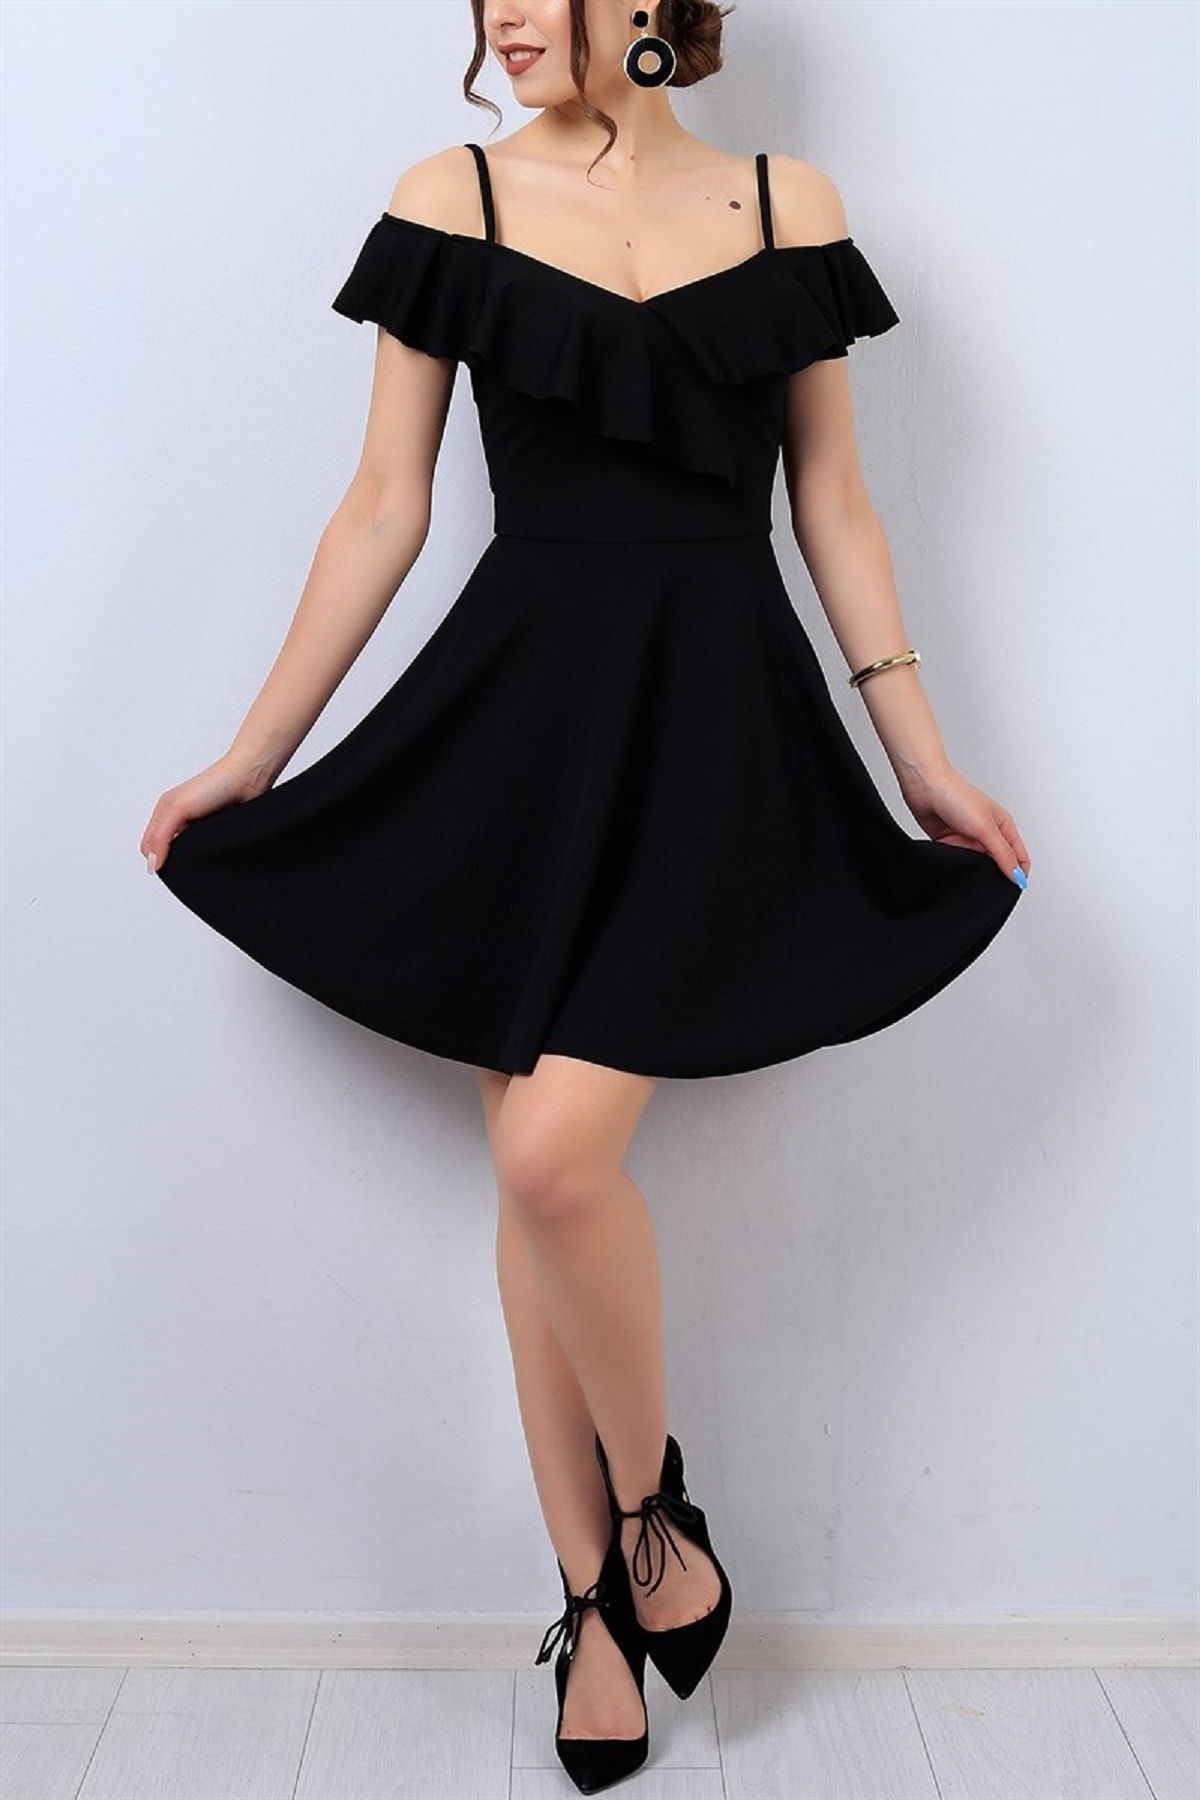 Secret Passion Lingerie Esnek Krep Kumaş Yakası Volan Detaylı Ince Askılı Kiloş Siyah Abiye Elbise Gece Elbisesi 077